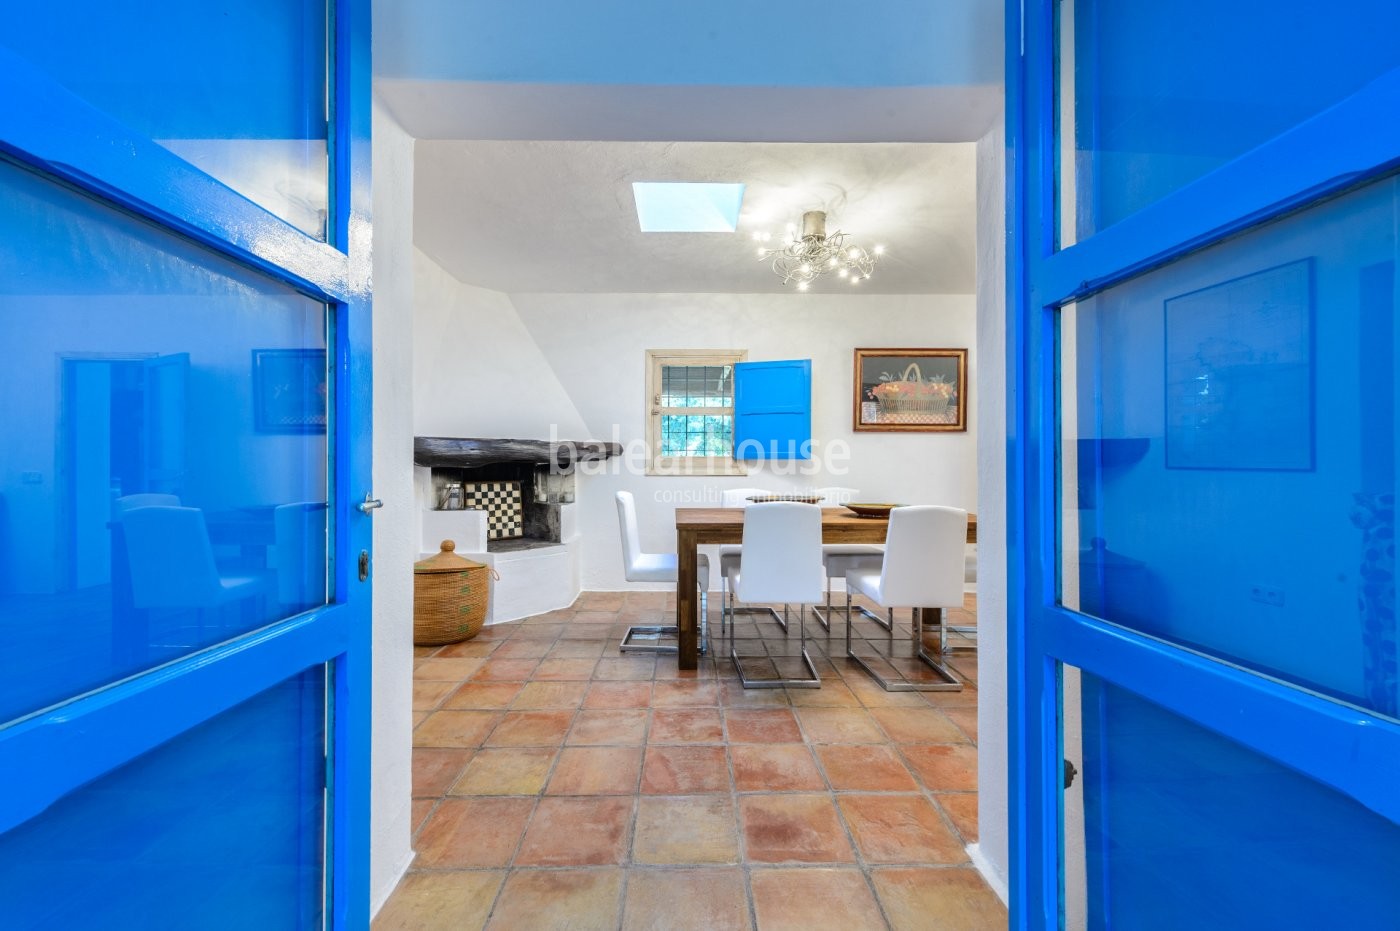 Casa renovada estilo finca a pocos minutos de Ibiza ciudad